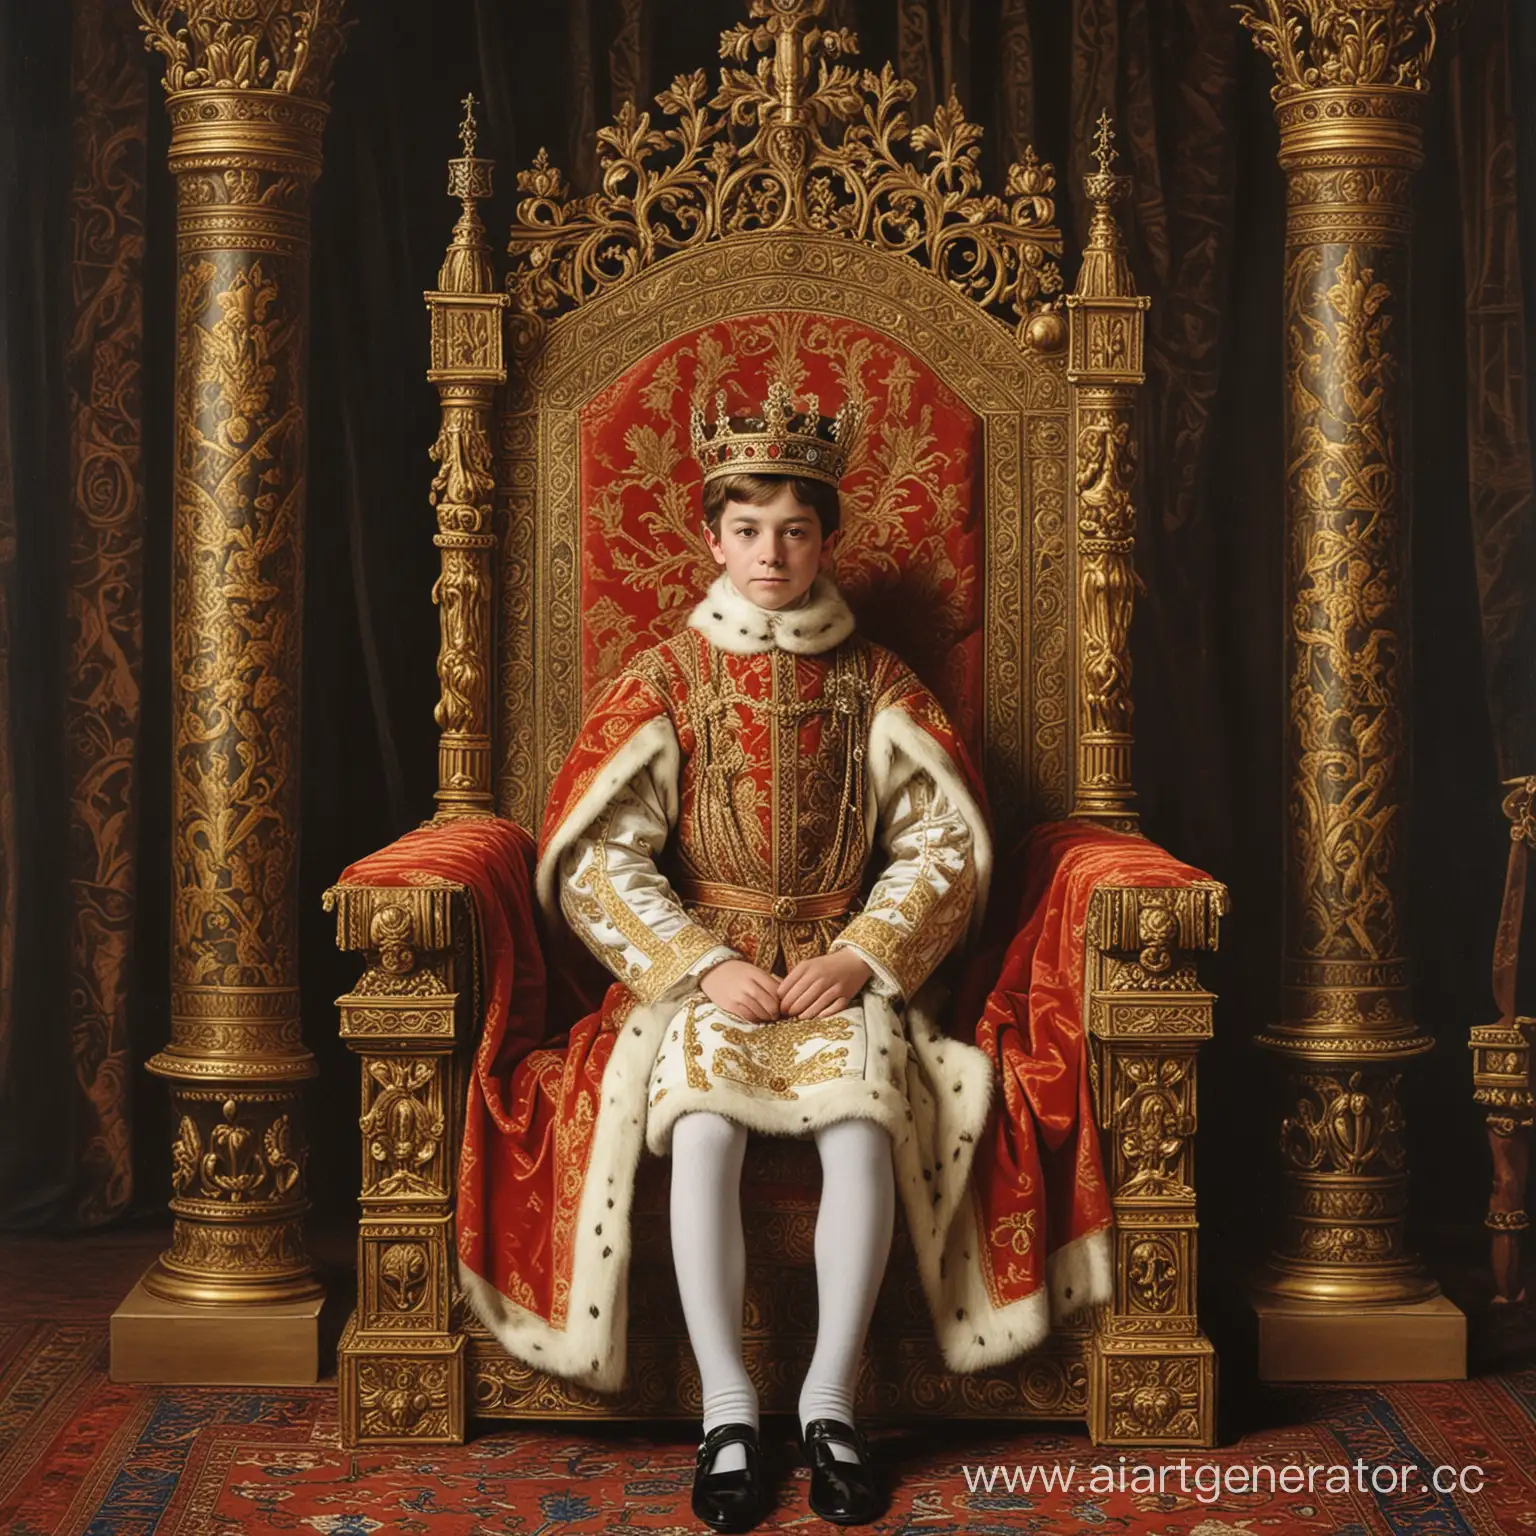 12 летний король Англии Габриэль сидит на троне в тронном зале в 16 веке